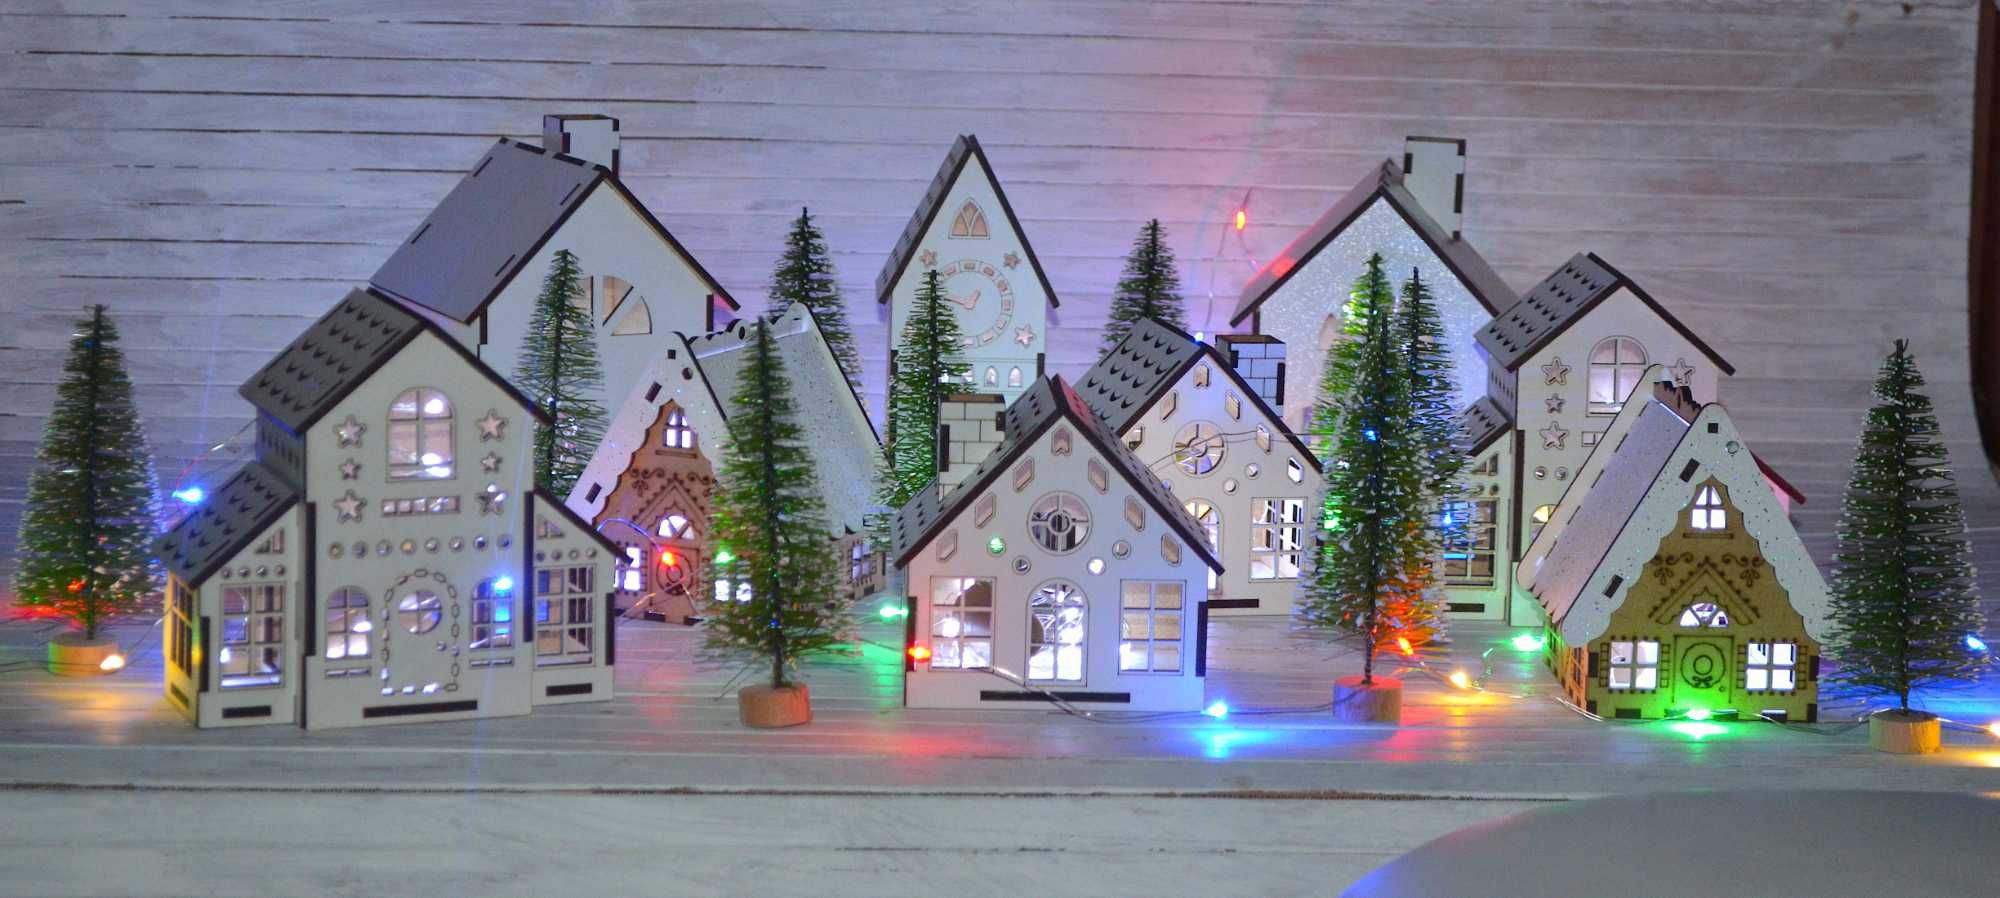 Рождественский город, новогодняя композиция из домиков